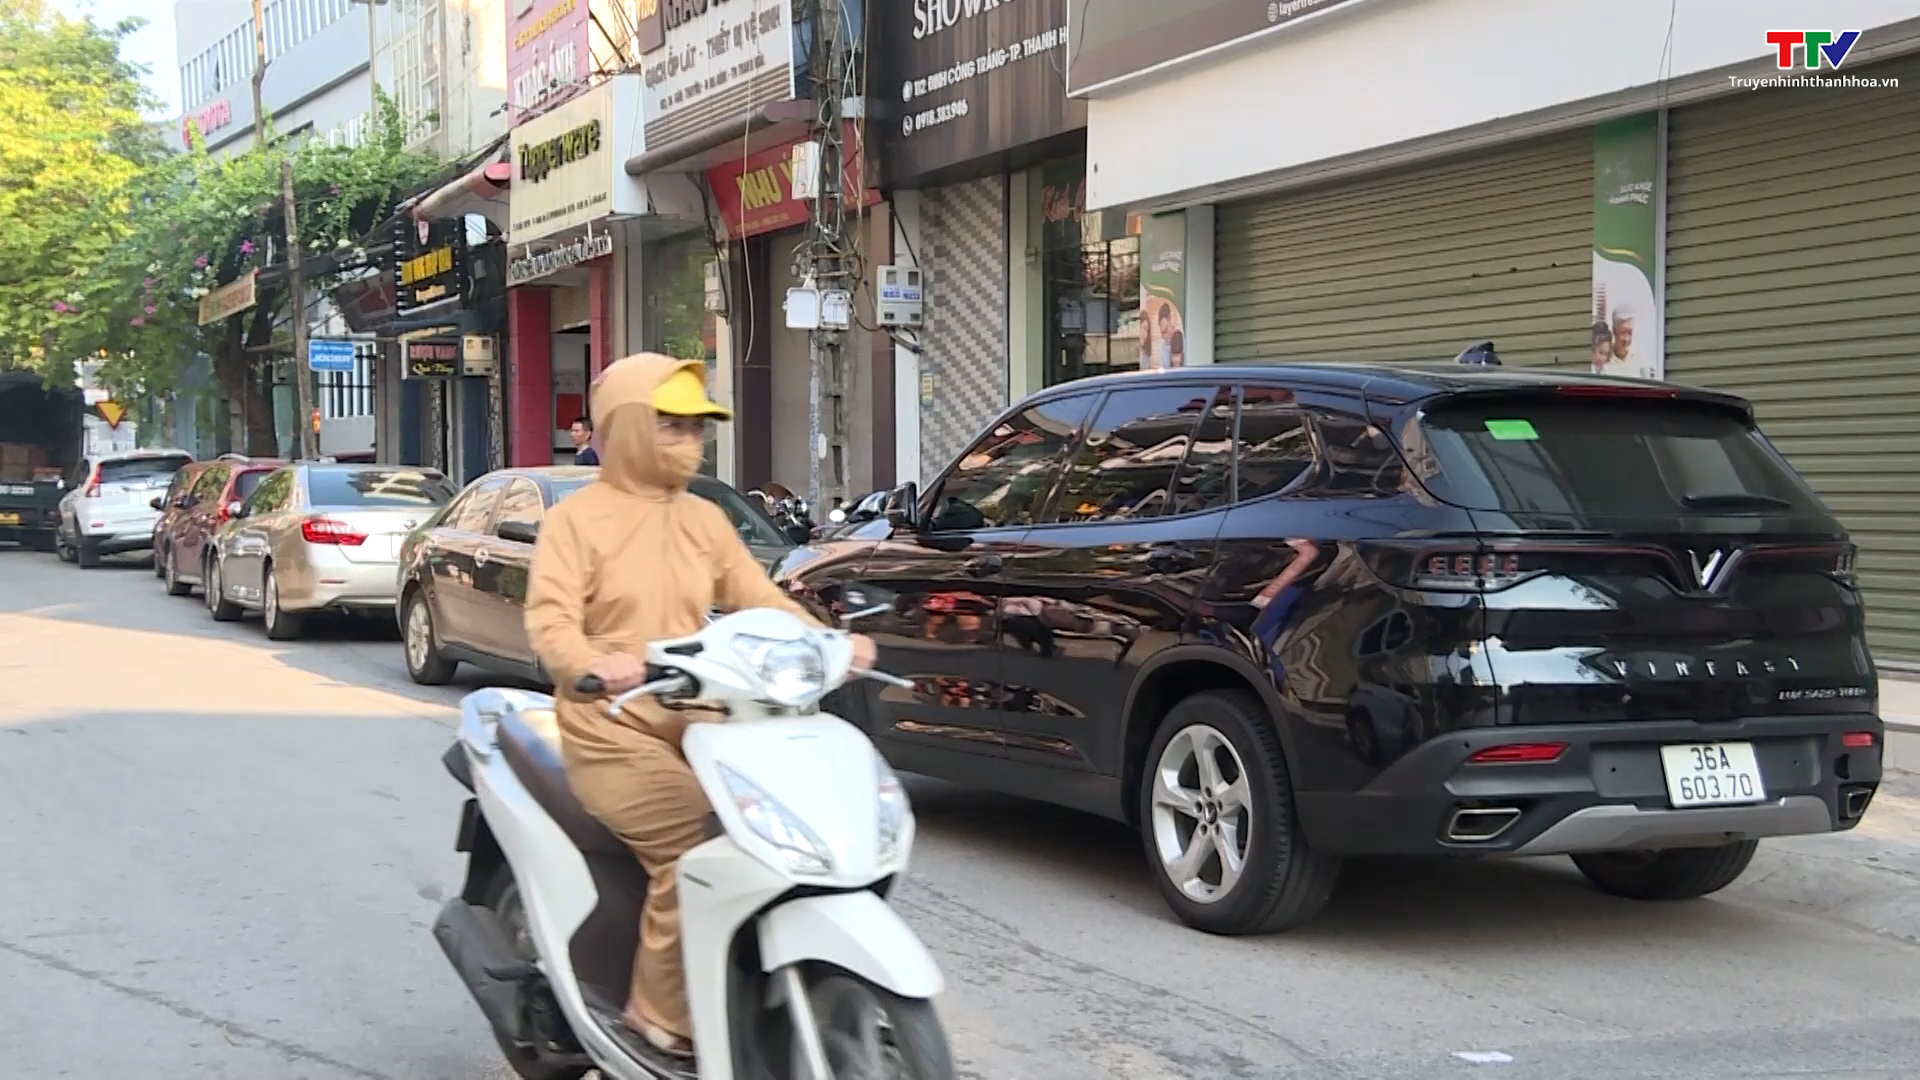 Cần có giải pháp chấn chỉnh tình trạng dừng, đỗ xe sai quy định tại thành phố Thanh Hoá  - Ảnh 7.